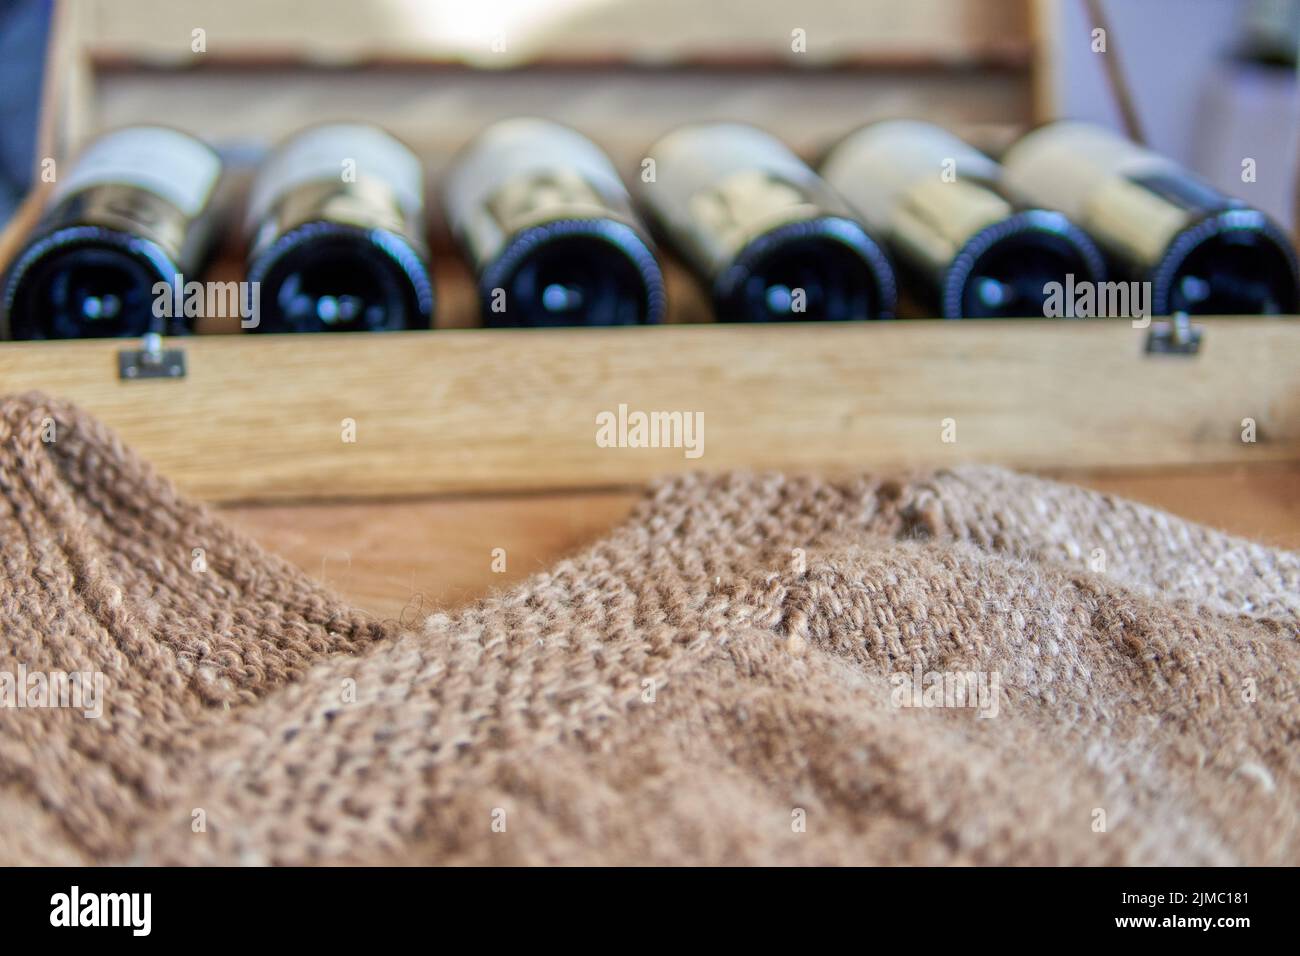 Holzkiste aus Rotweinflaschen mit einem handgefertigten braunen Poncho auf der Vorderseite. Besuch einer Weinkellerei in mendoza, argentinien. Selektiver Fokus Stockfoto